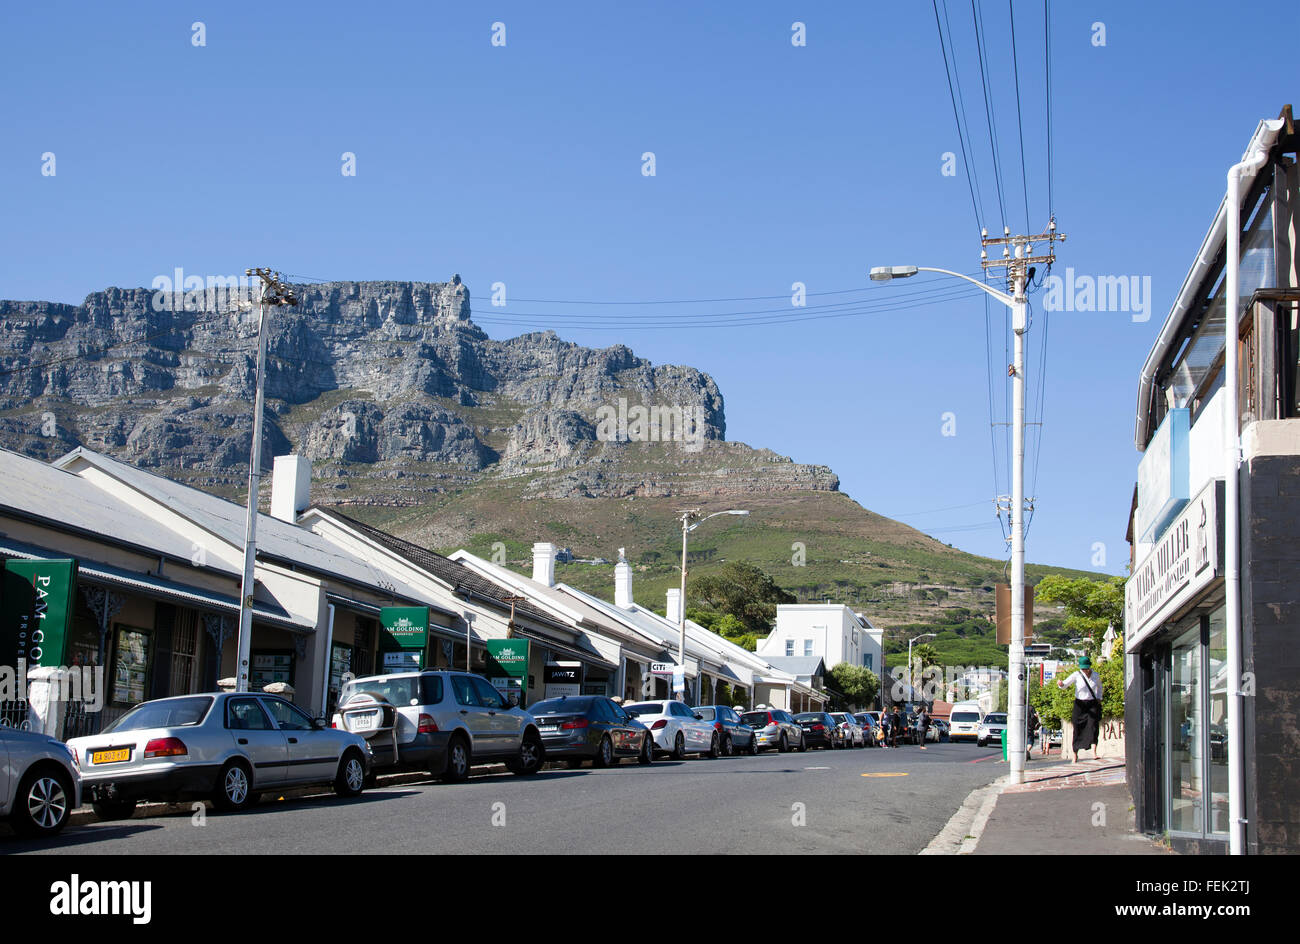 Kloof Street Quartier dans Cape Town - Afrique du Sud Banque D'Images